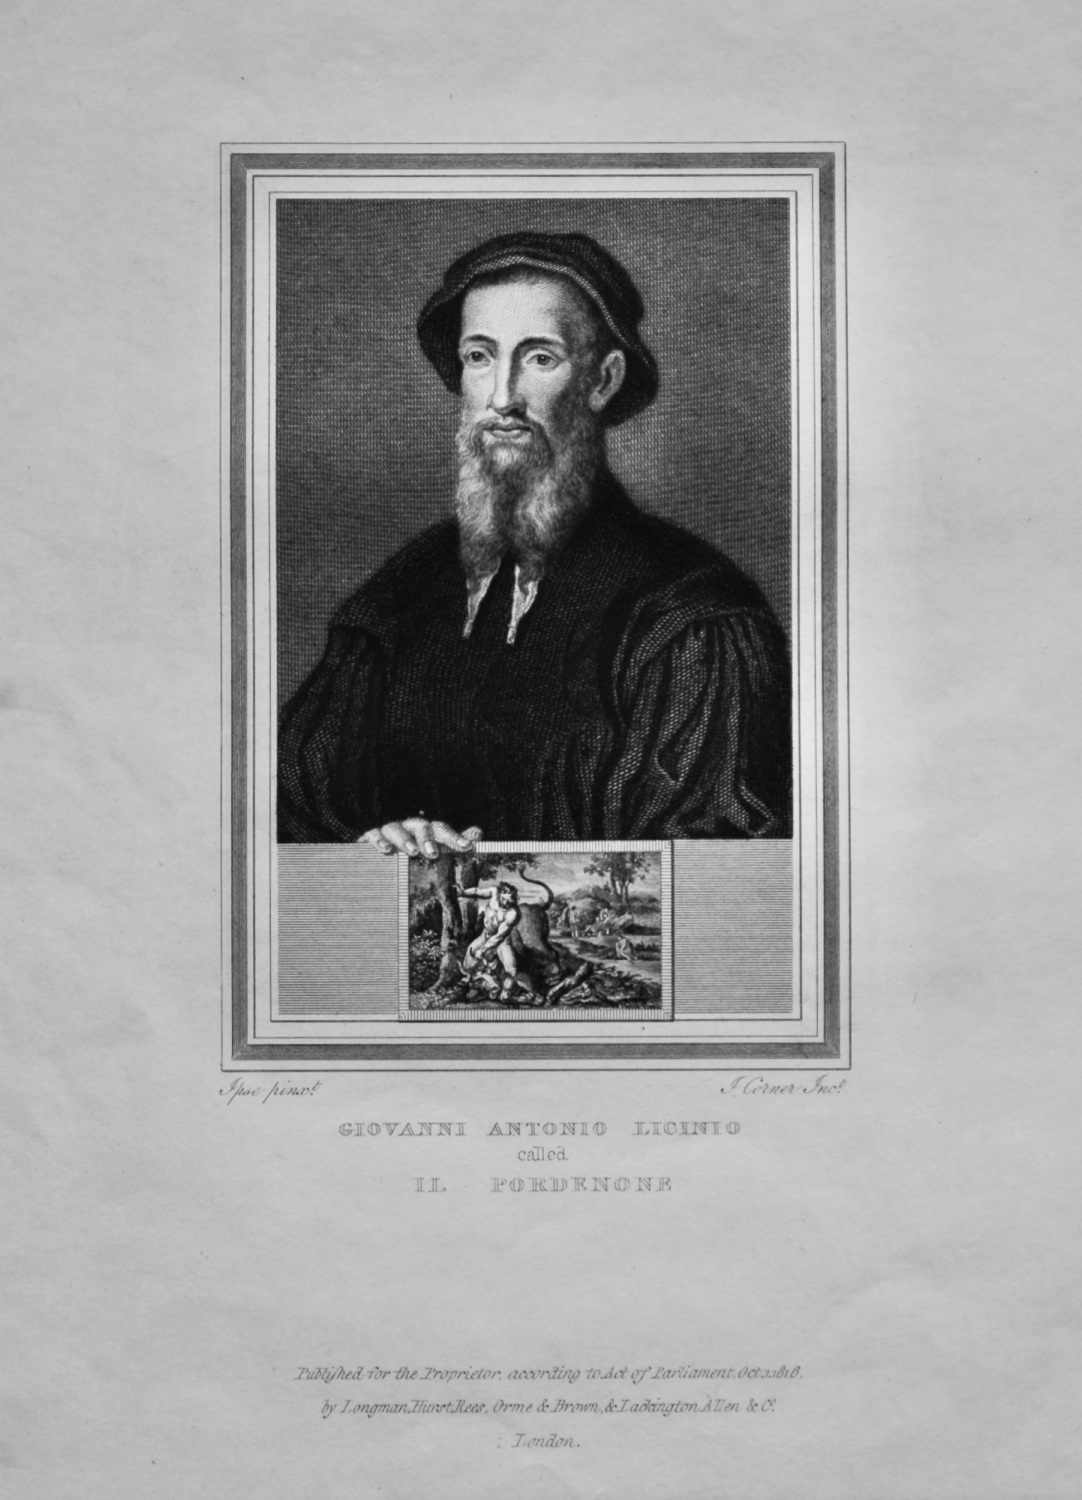 Giovanni Antonio Licinio  called Il Pordenone.  1825.